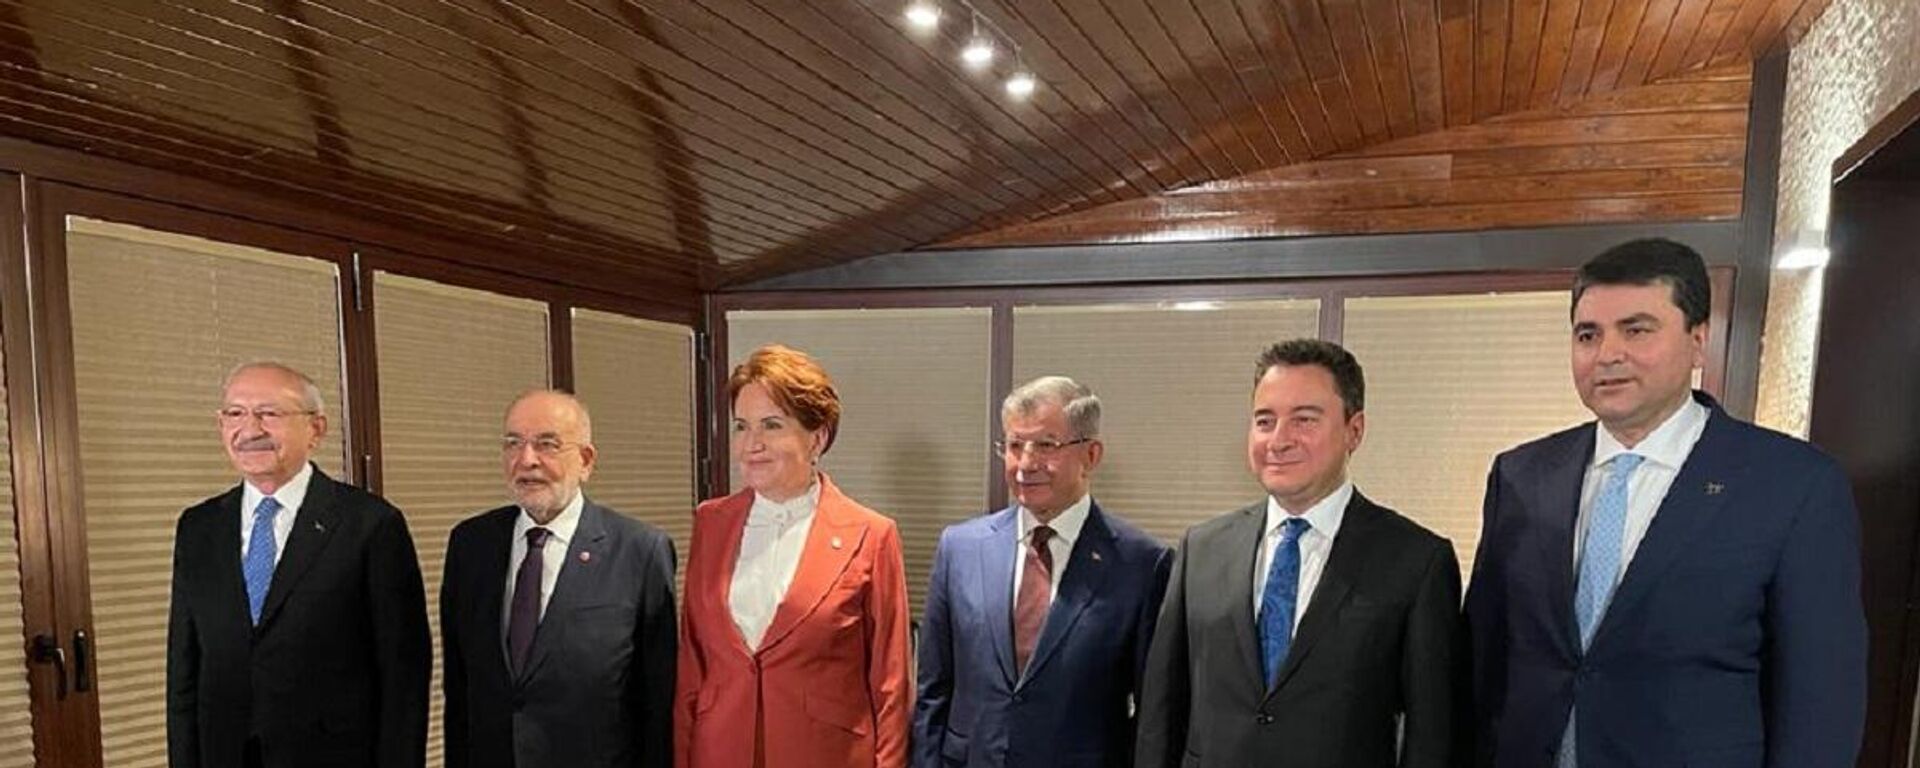 CHP Genel Başkanı Kemal Kılıçdaroğlu'nun daveti ile 6 parti lideri akşam yemeğinde bir araya geldi. - Sputnik Türkiye, 1920, 30.05.2022